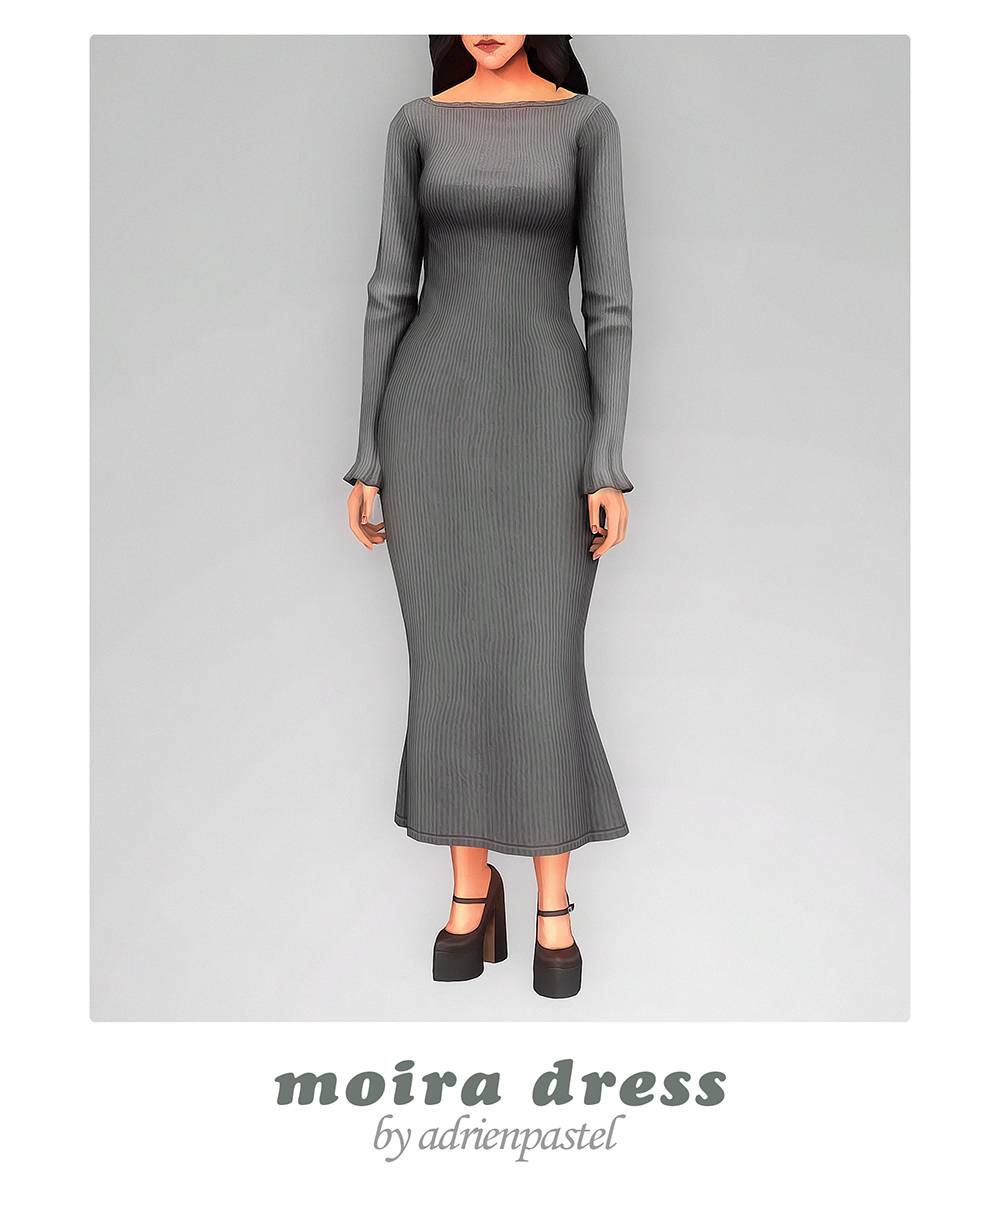 Moira Dress - Screenshots - The Sims 4 Create a Sim - CurseForge